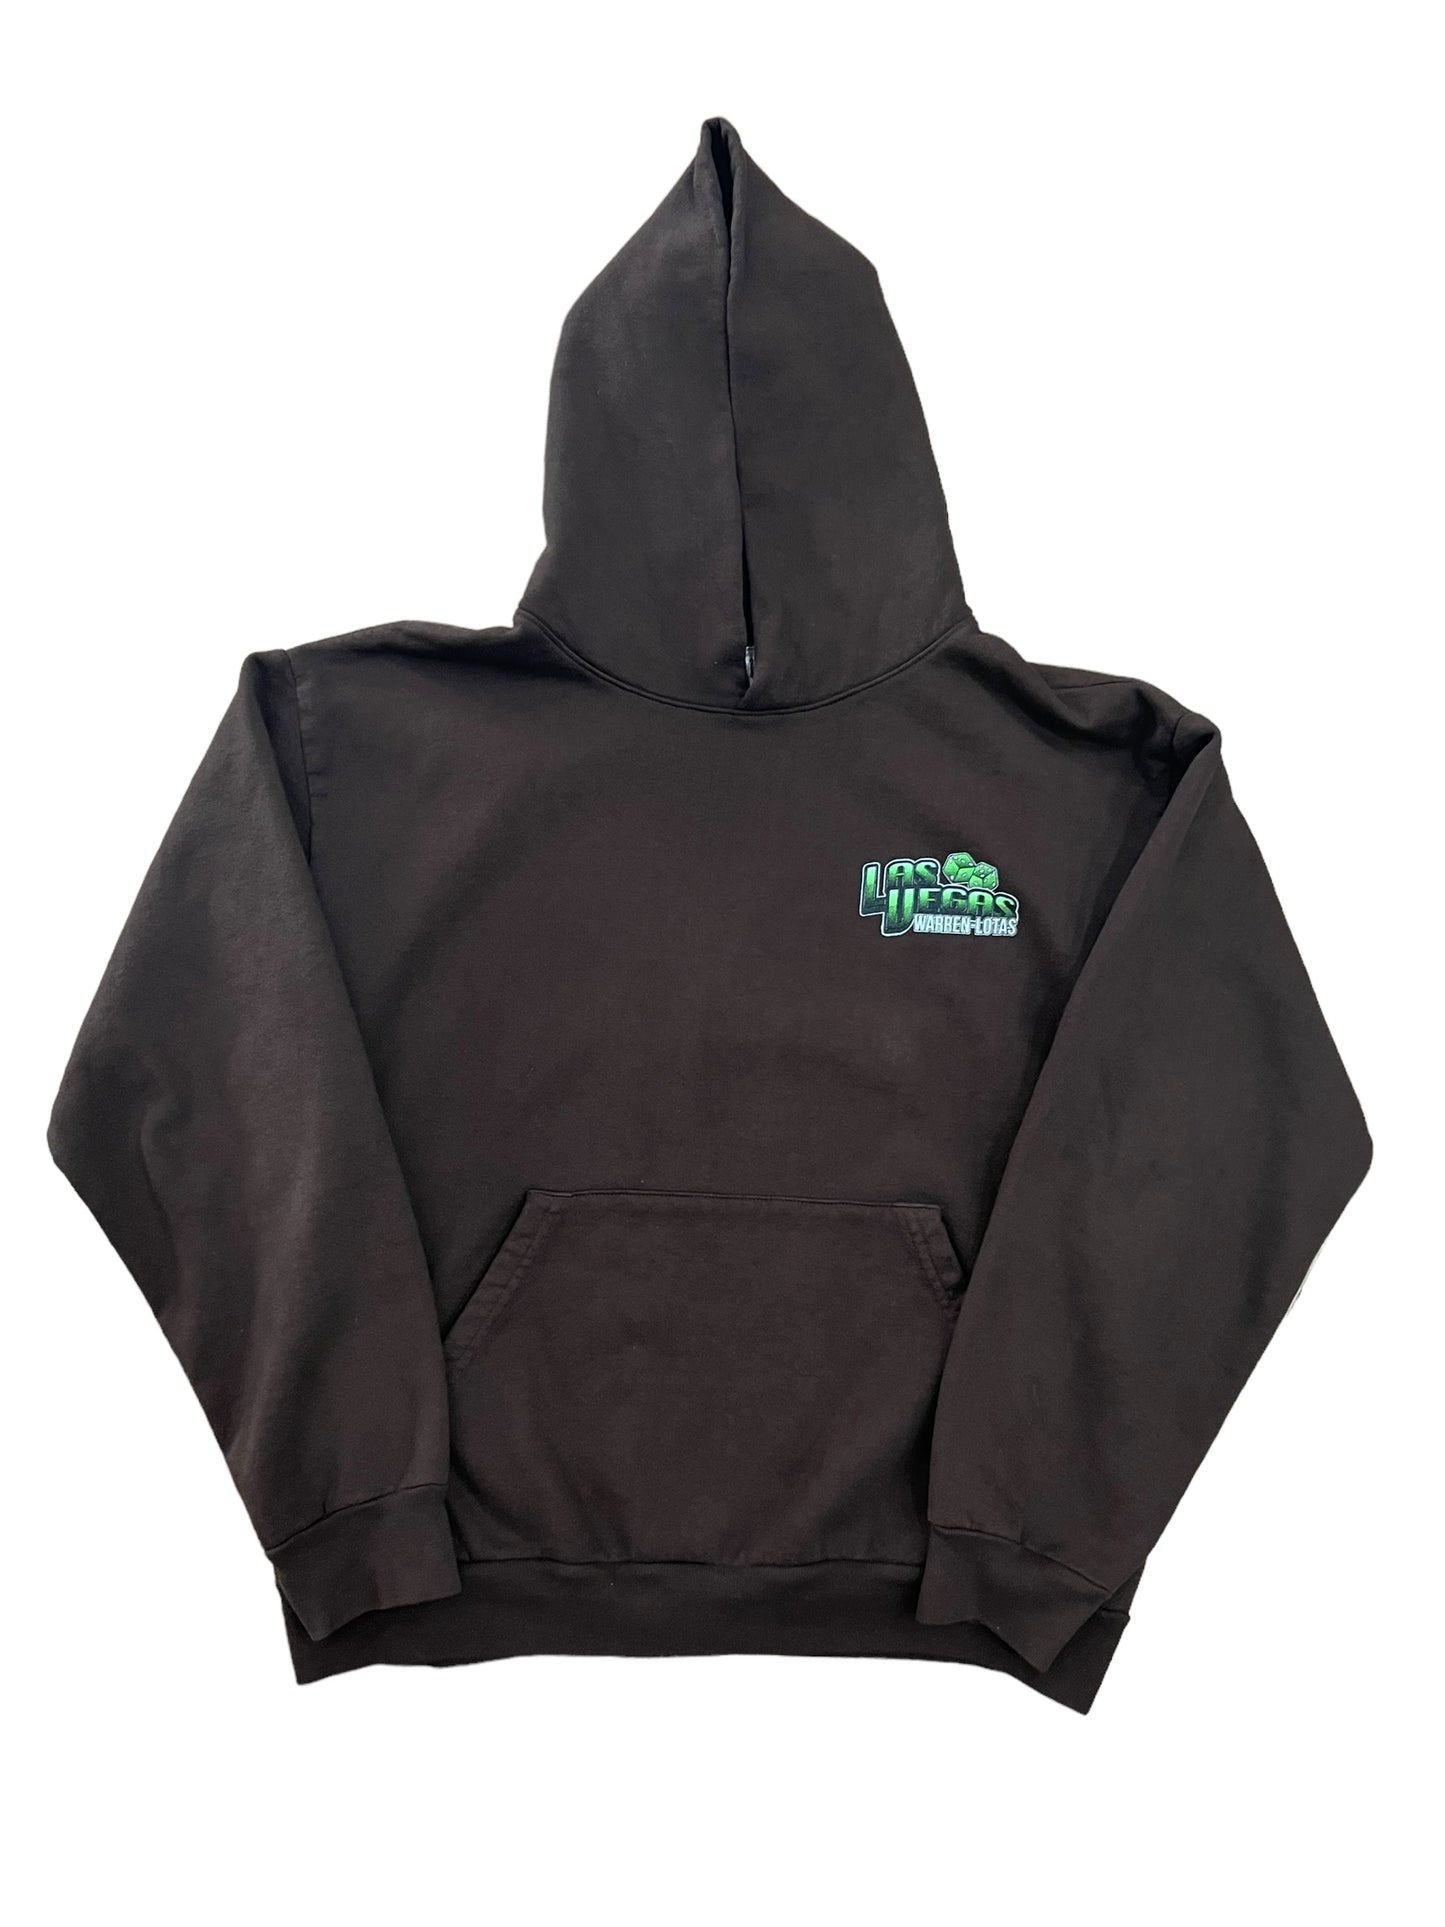 Warren Lotas “World Series of Black Jack” hoodie pre-owned size L